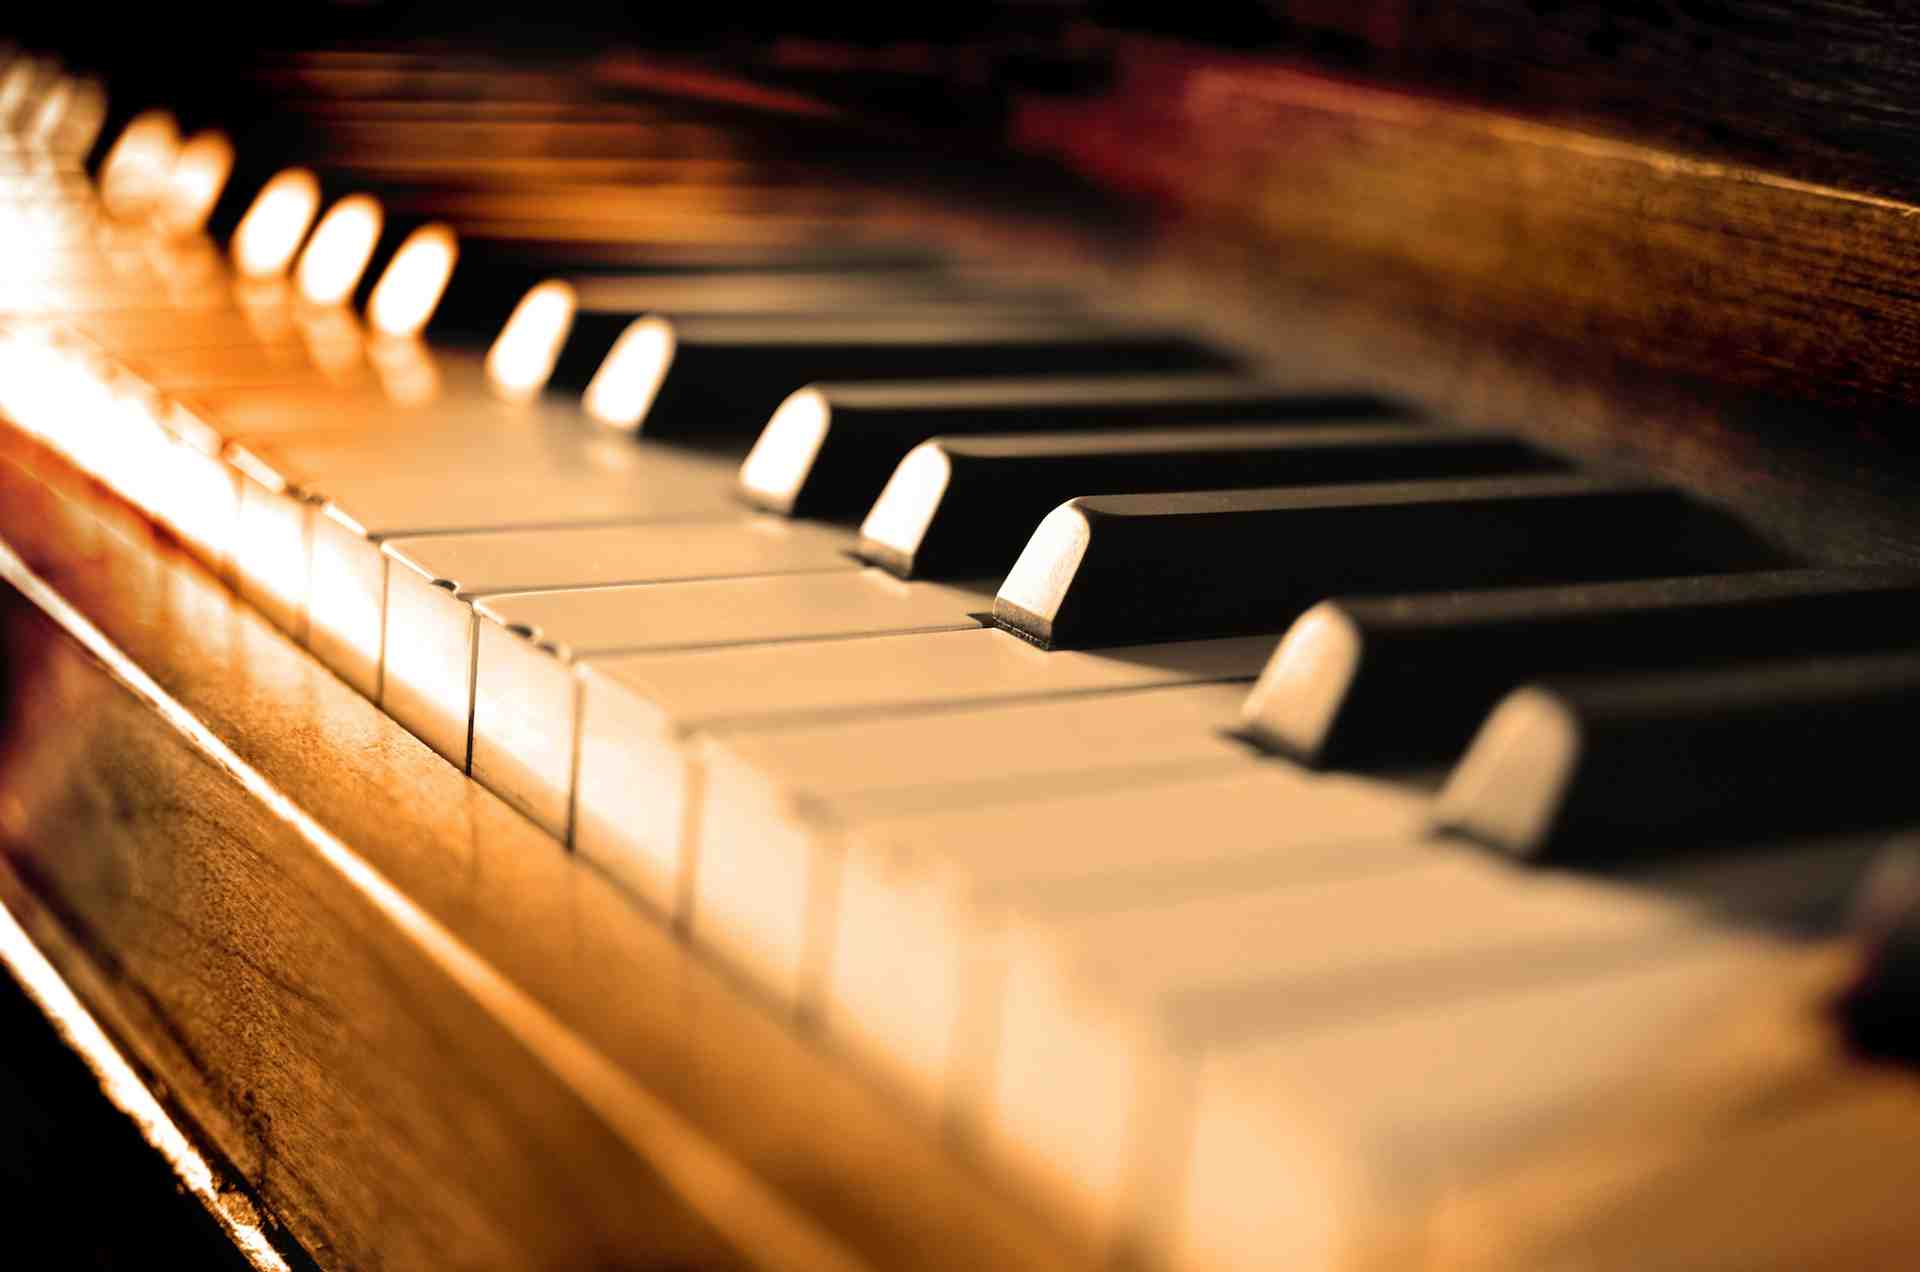 پیانو آکوستیک چه مزایایی نسبت به دیگر پیانوها دارد؟